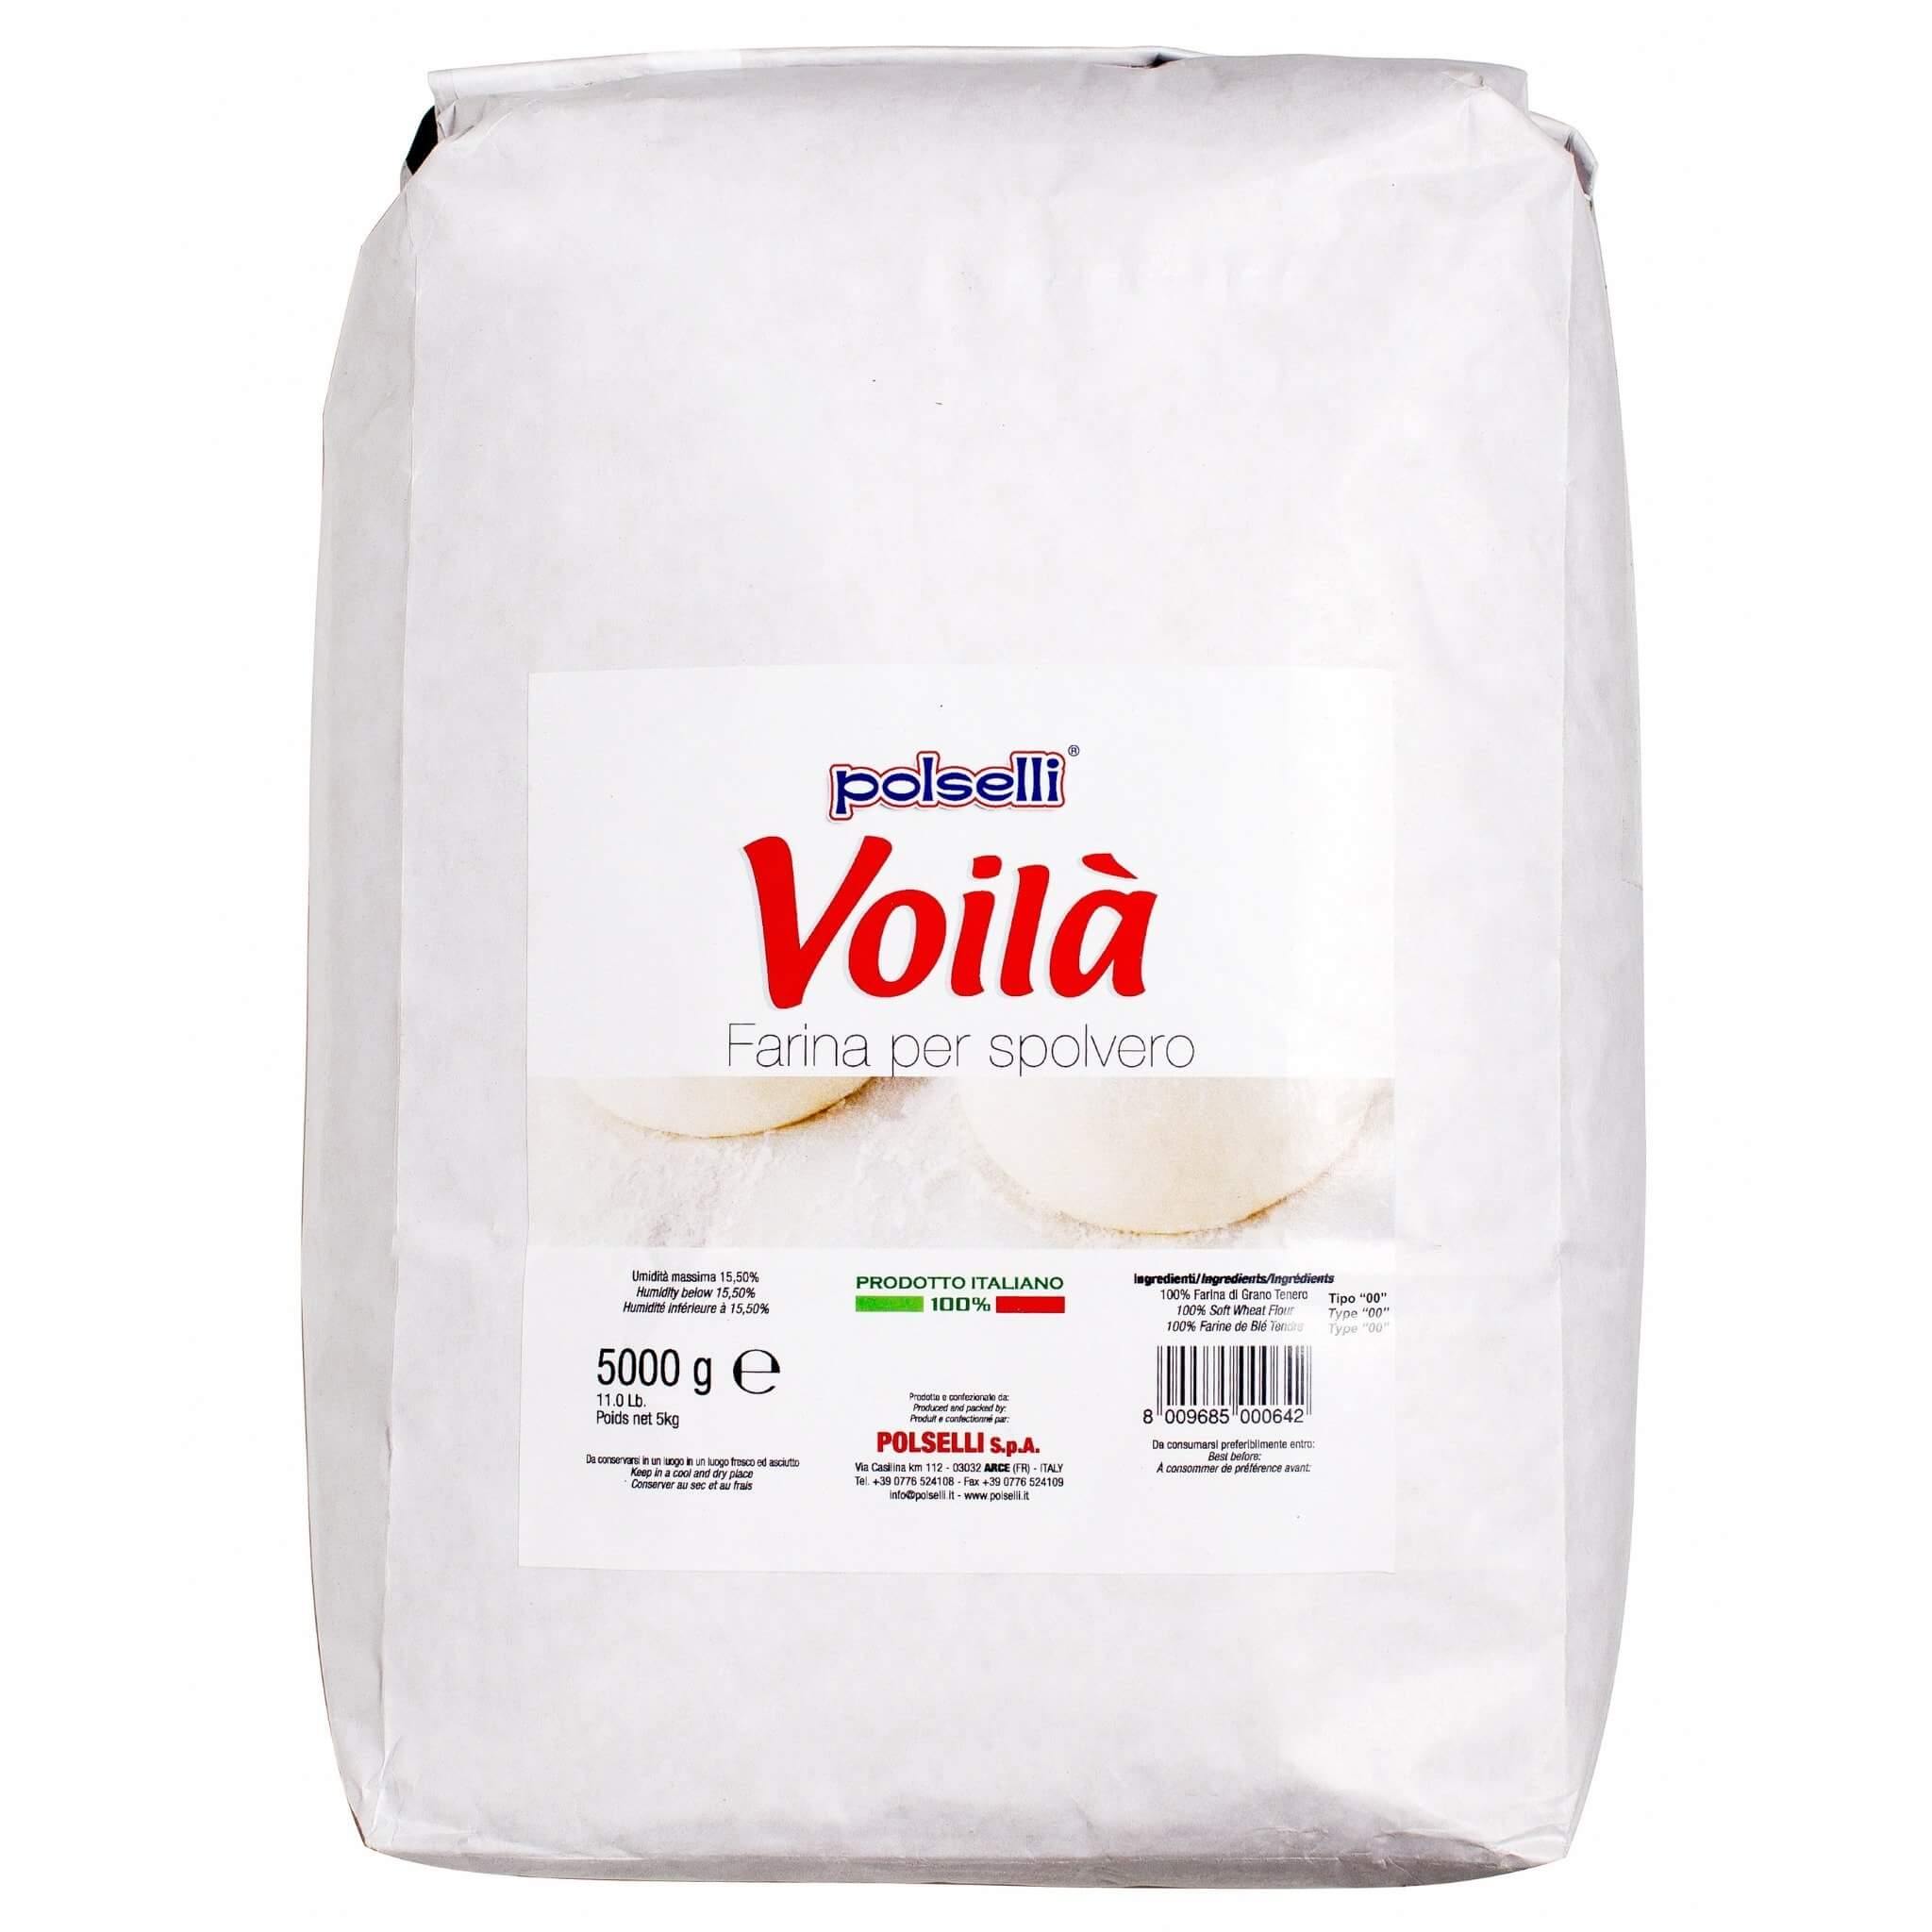 Polselli: Voila' Spolvero "00" Flour (Working table Flour) 11 lb. Bag - Wholesale Italian Food